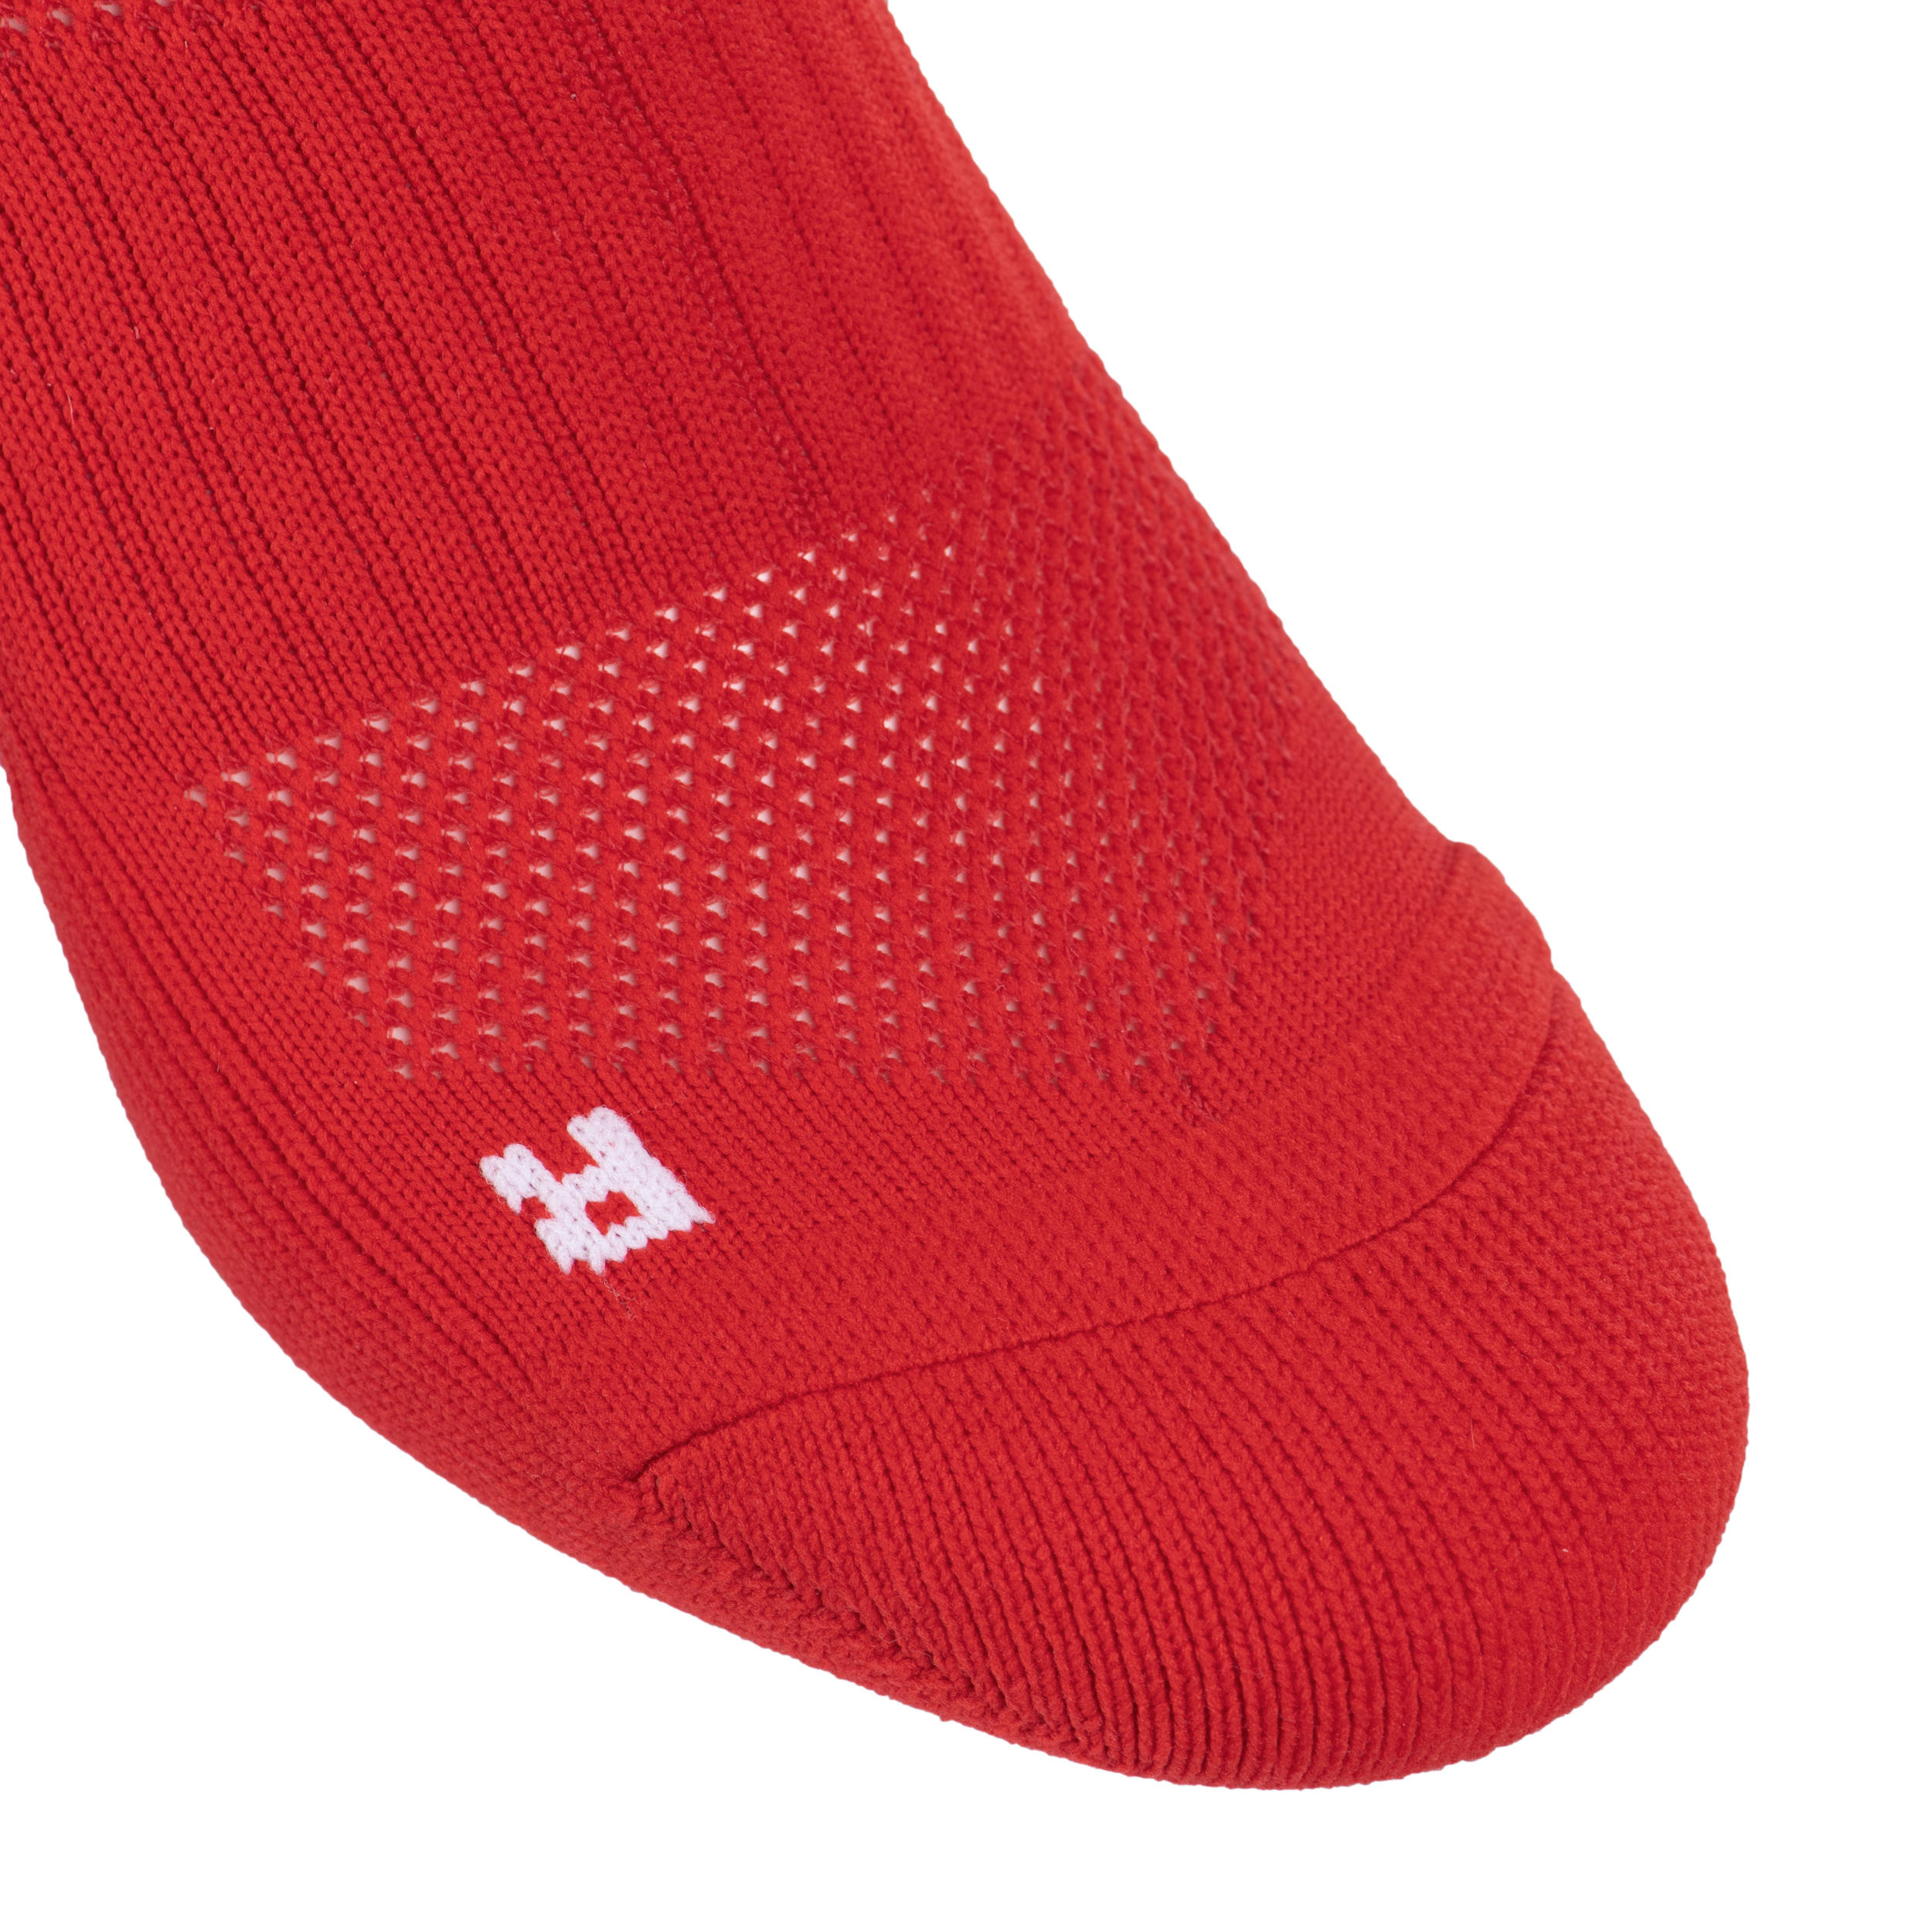 Men's/Women's High Rugby Socks R500 - Red/White 4/5